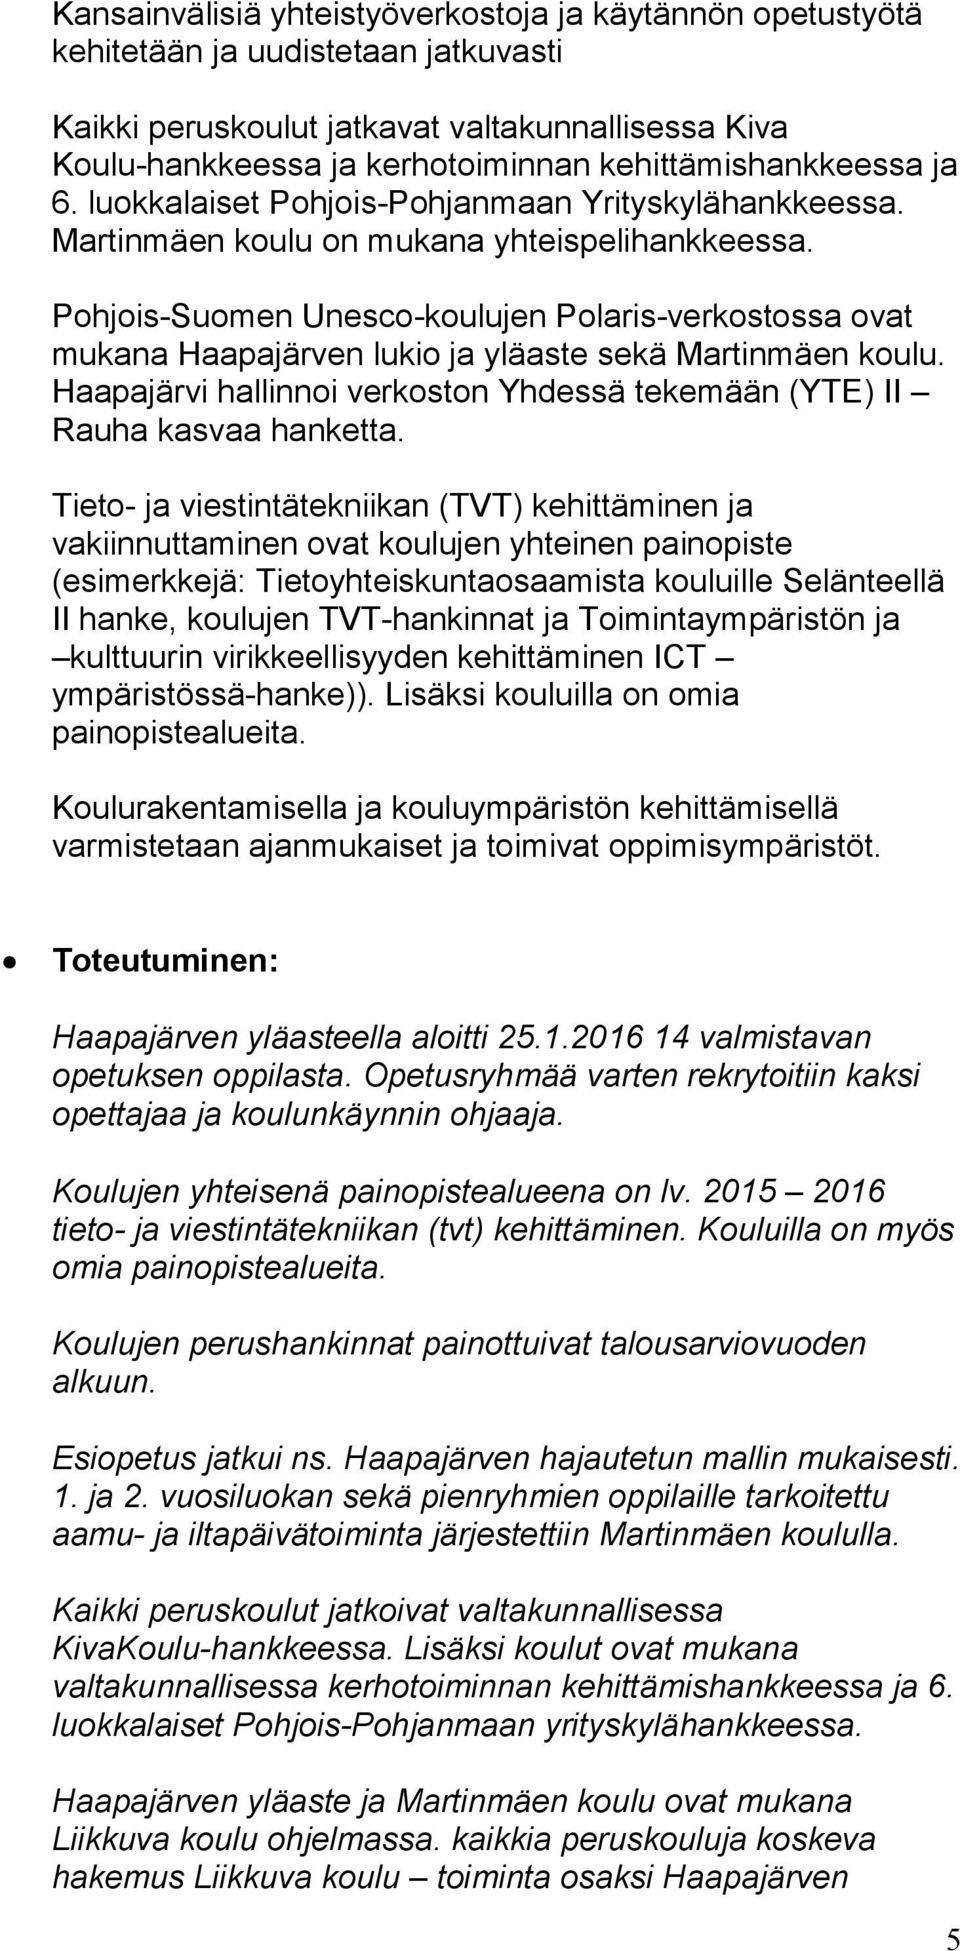 Pohjois-Suomen Unesco-koulujen Polaris-verkostossa ovat mukana Haapajärven lukio ja yläaste sekä Martinmäen koulu. Haapajärvi hallinnoi verkoston Yhdessä tekemään (YTE) II Rauha kasvaa hanketta.